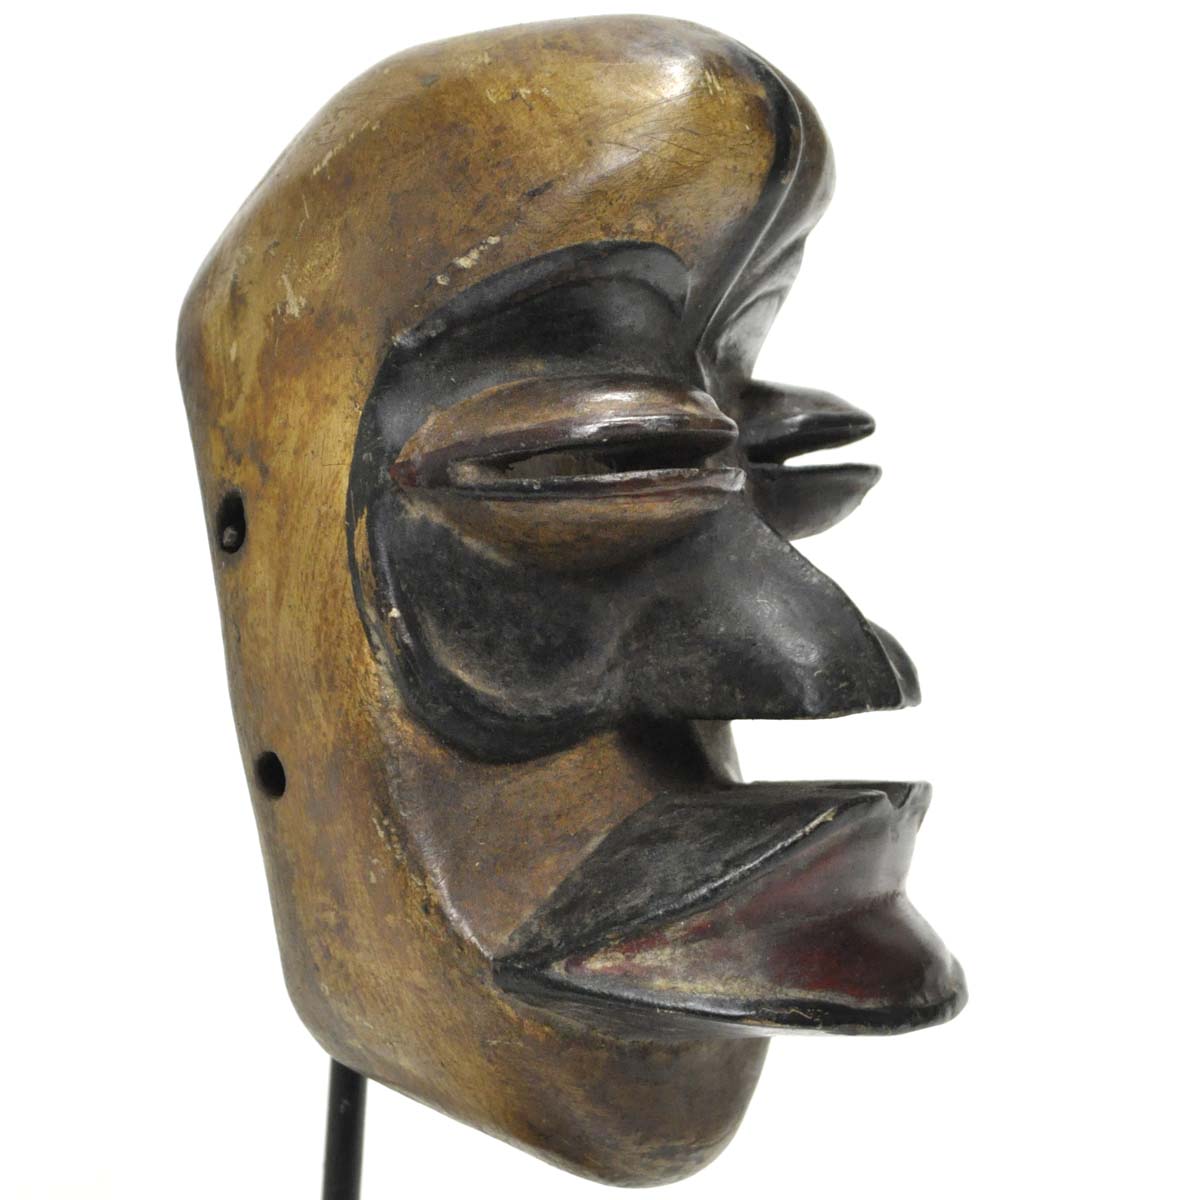 ベテ族パスポートマスク【アフリカンアート 仮面】 (b262-03) アフリカ雑貨店 アフロモード